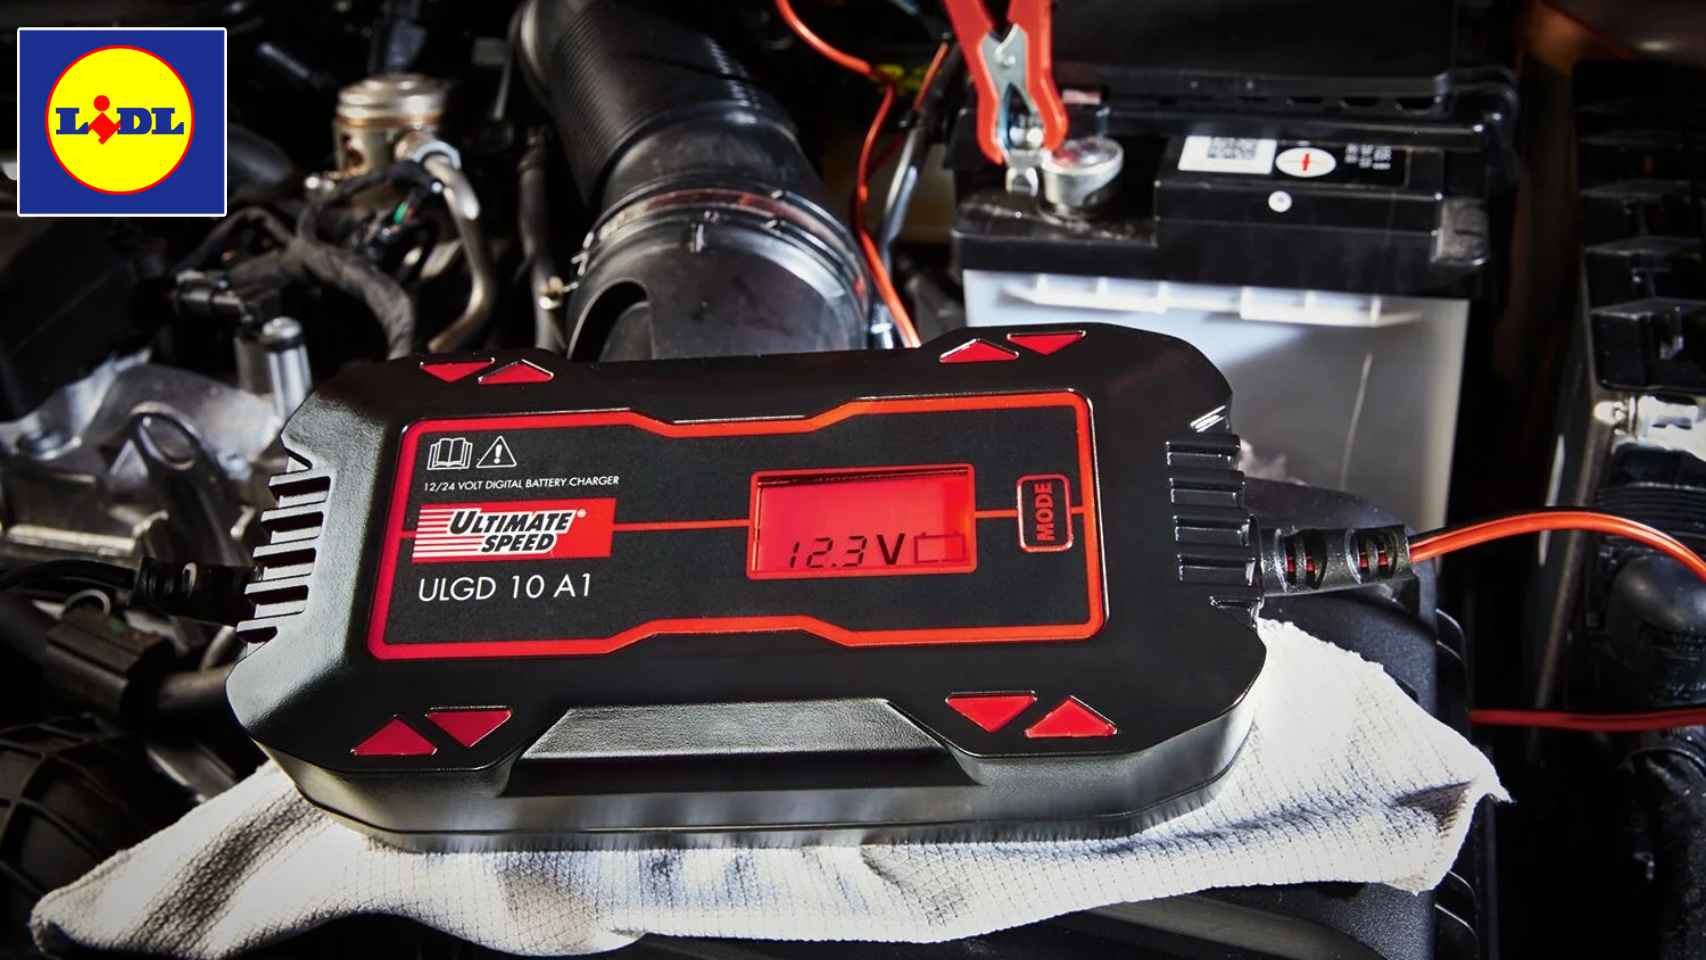 Lo nuevo gadget de Lidl carga la batería de tu coche y cuesta